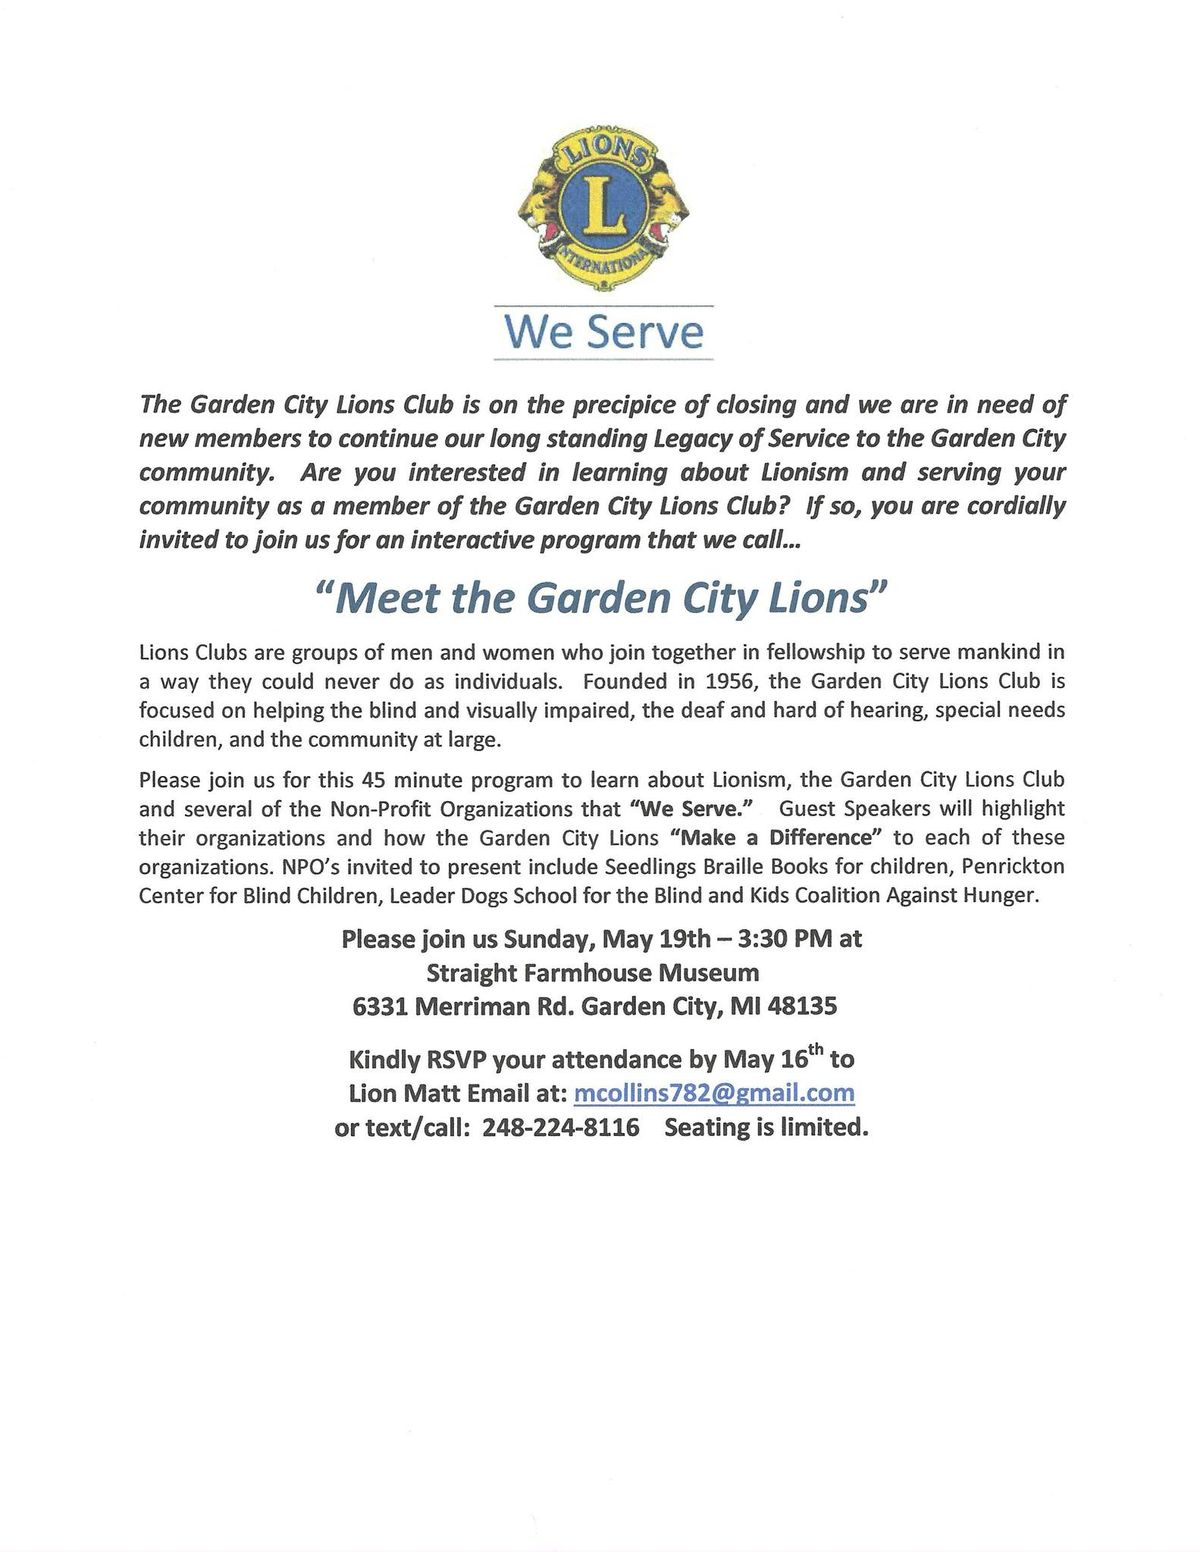 Meet the Garden City Lions